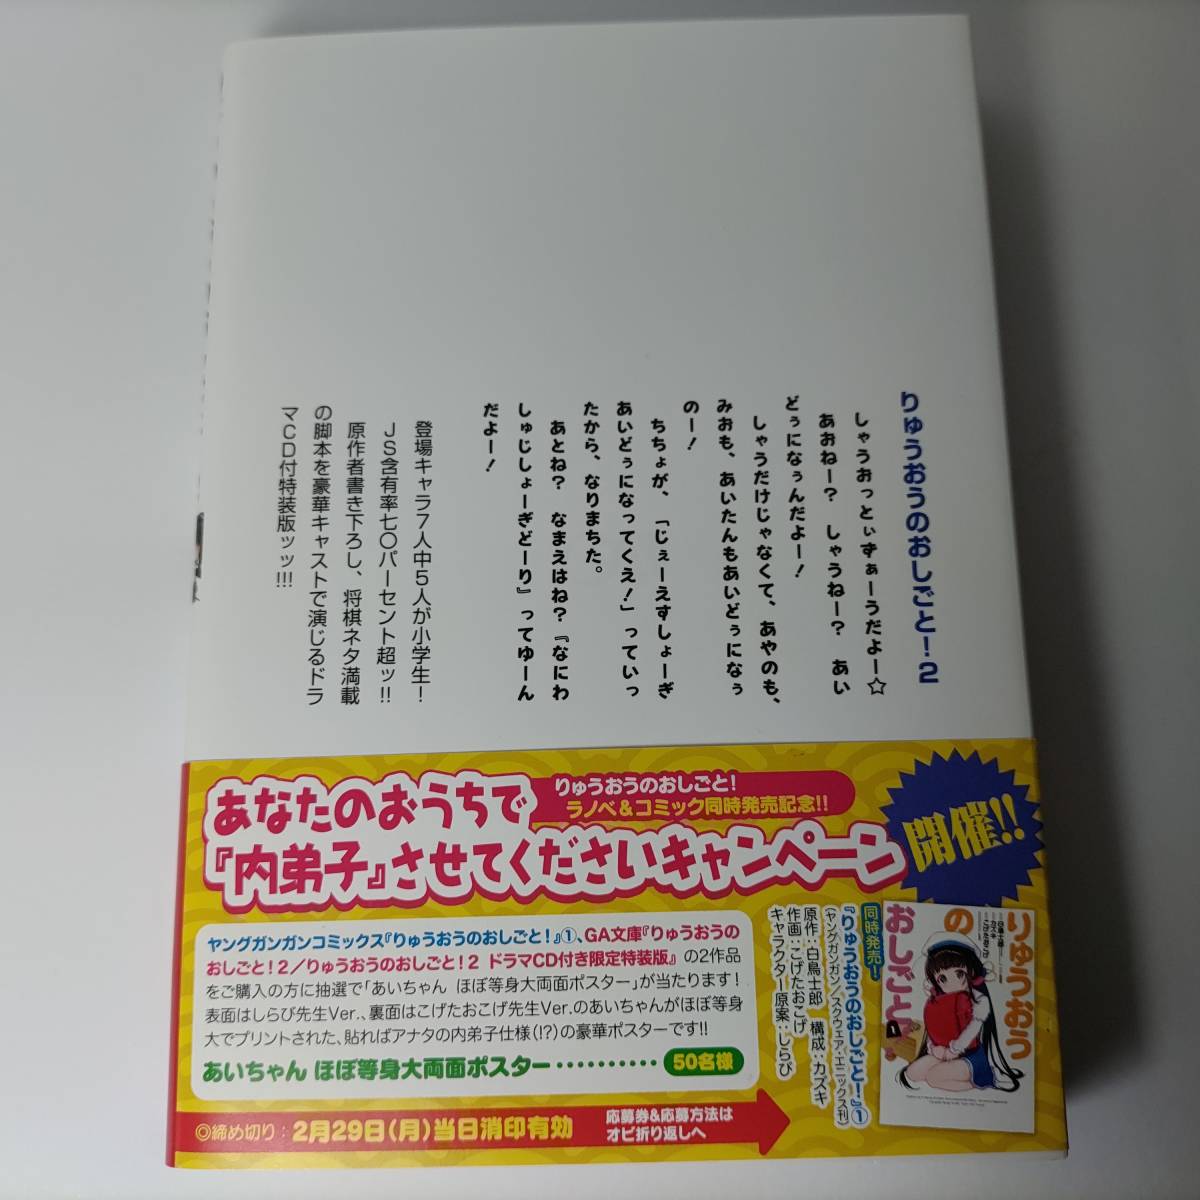 りゅうおうのおしごと! 2 ドラマCD付き限定特装版 (GA文庫) 白鳥士郎 (著)